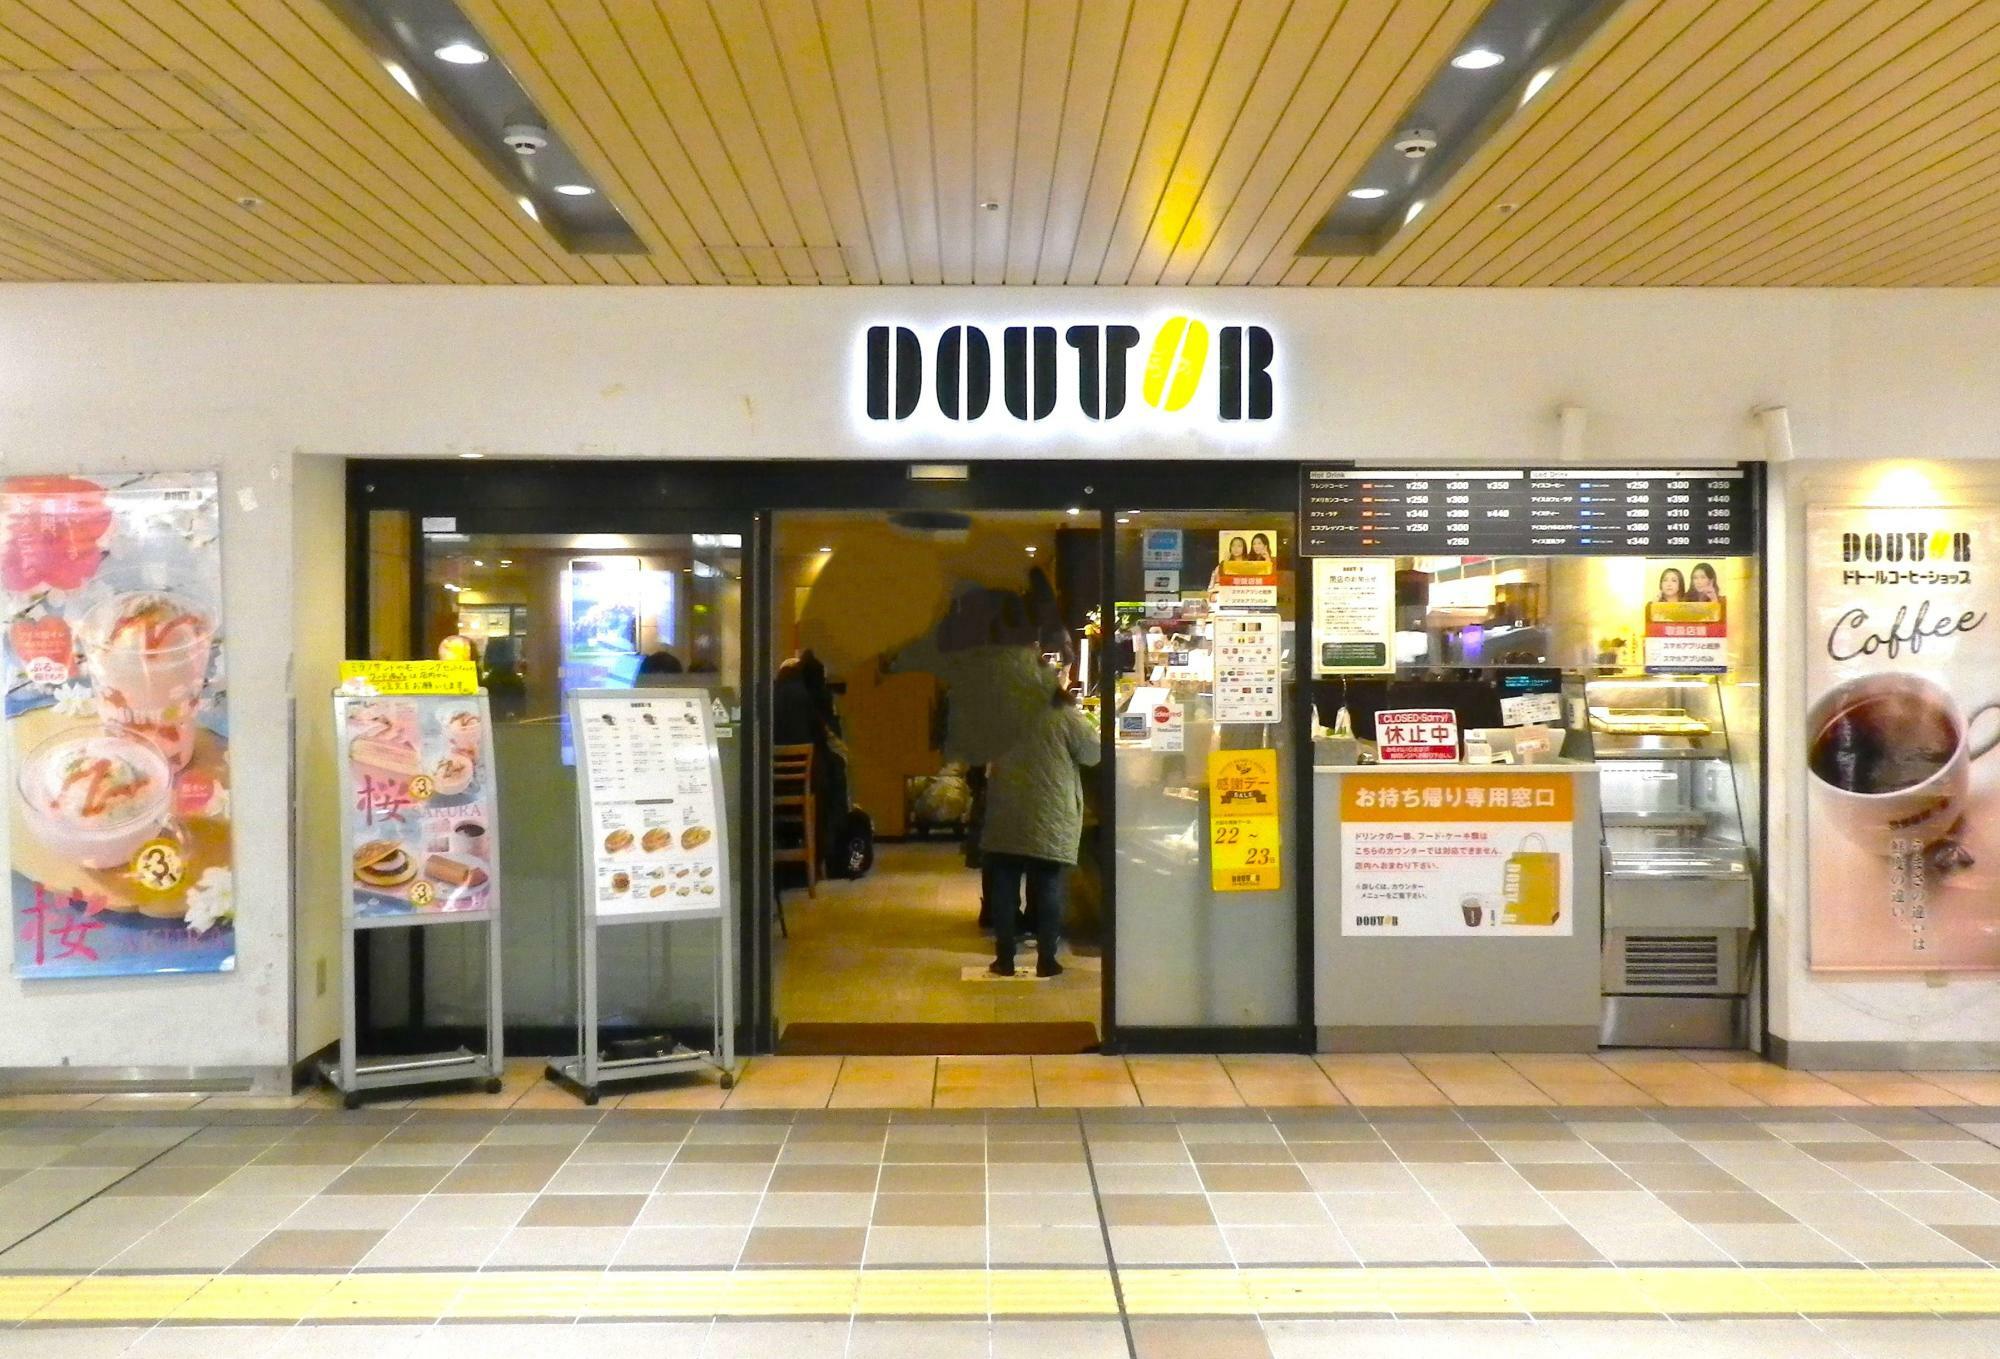 営業中の「ドトールコーヒーショップ JR新大阪店」。